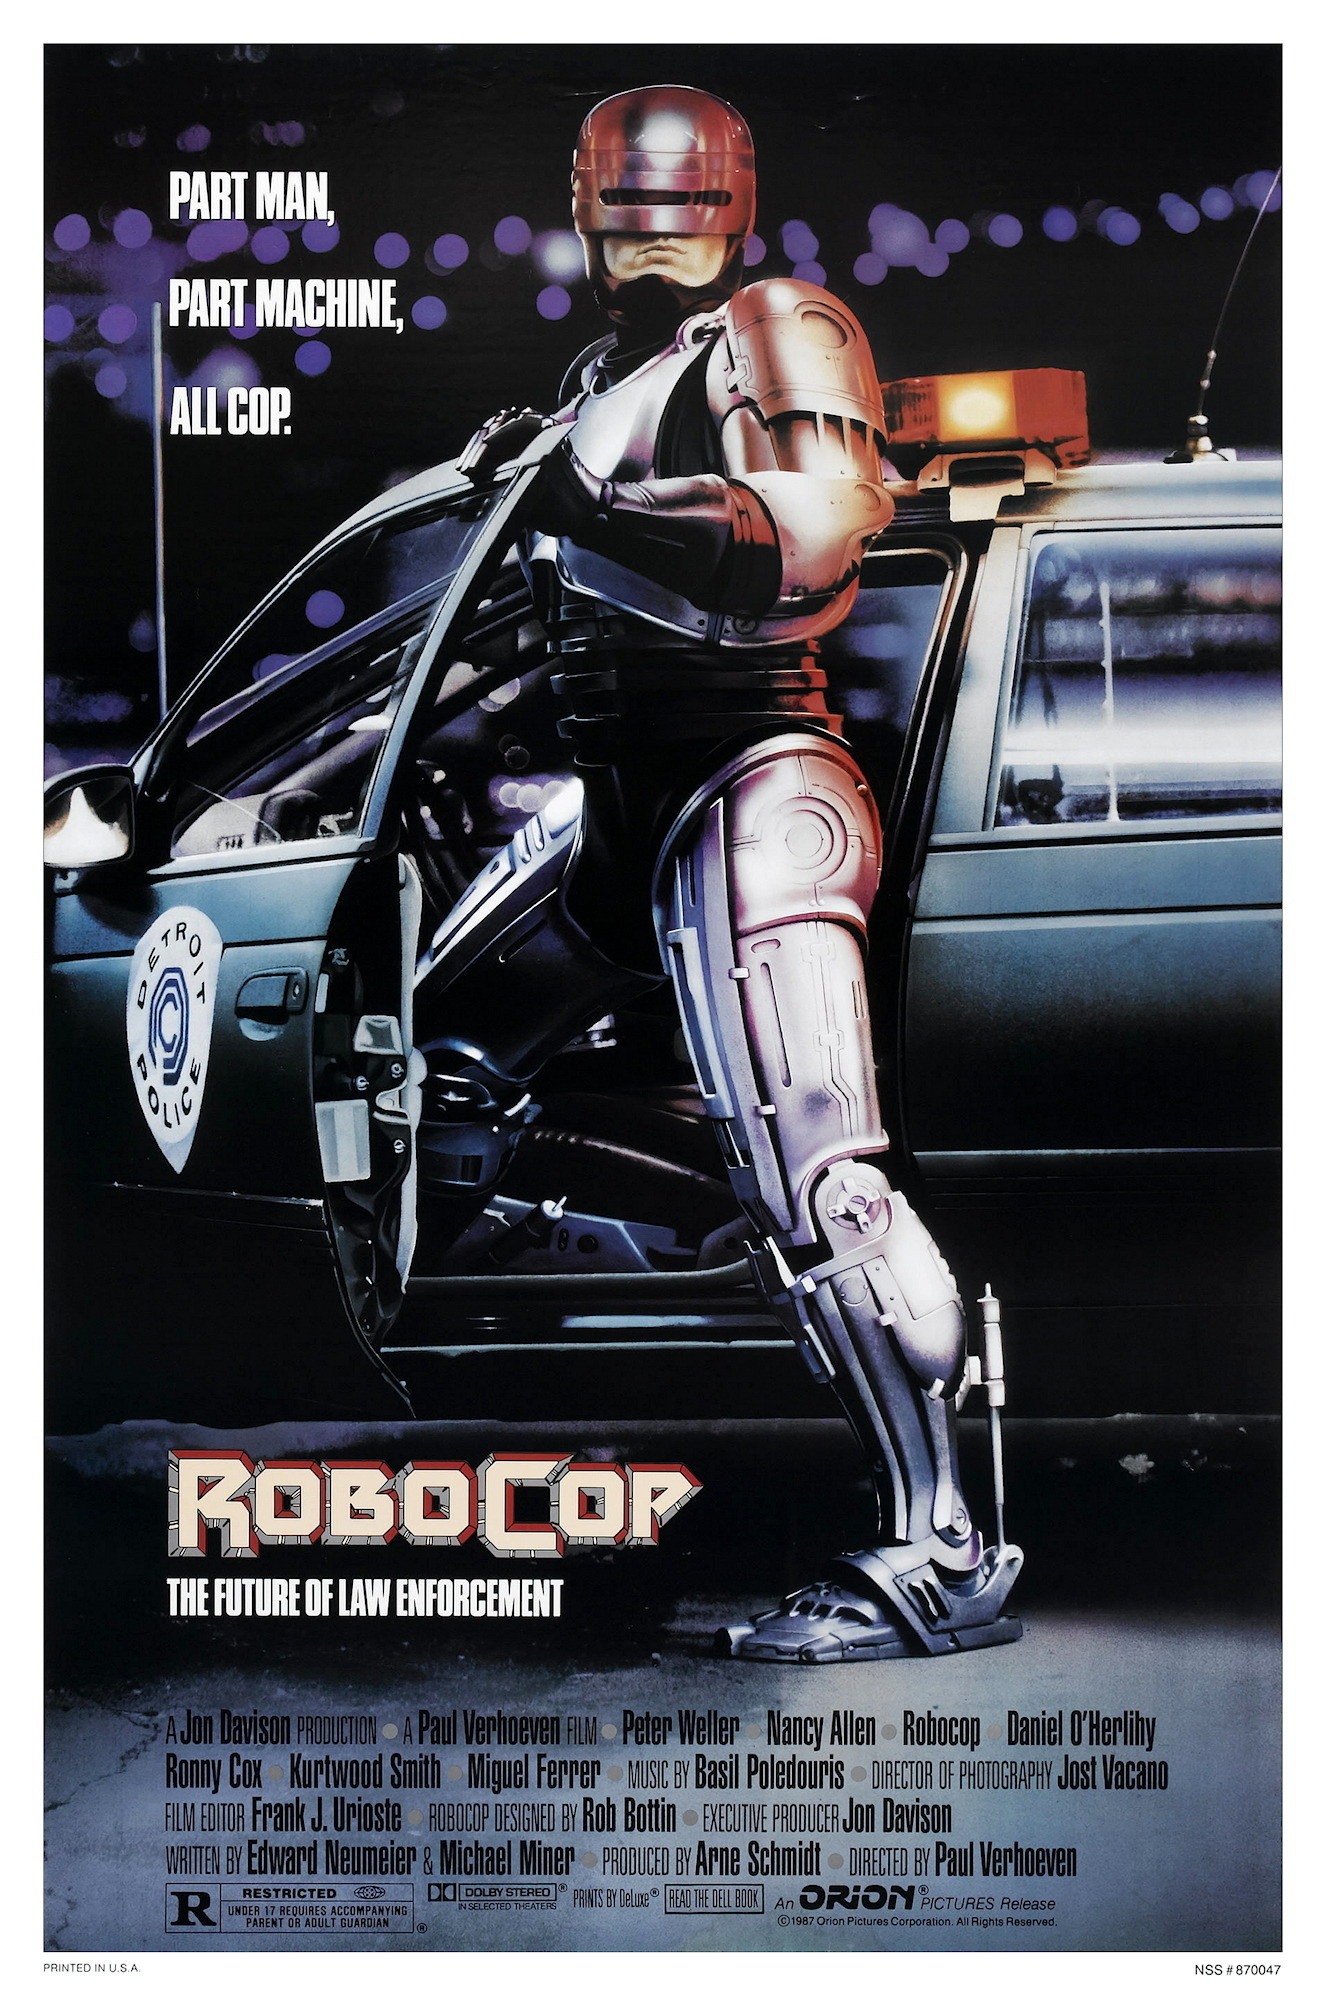 RoboCop (1987) Backgrounds, Compatible - PC, Mobile, Gadgets| 1326x2000 px